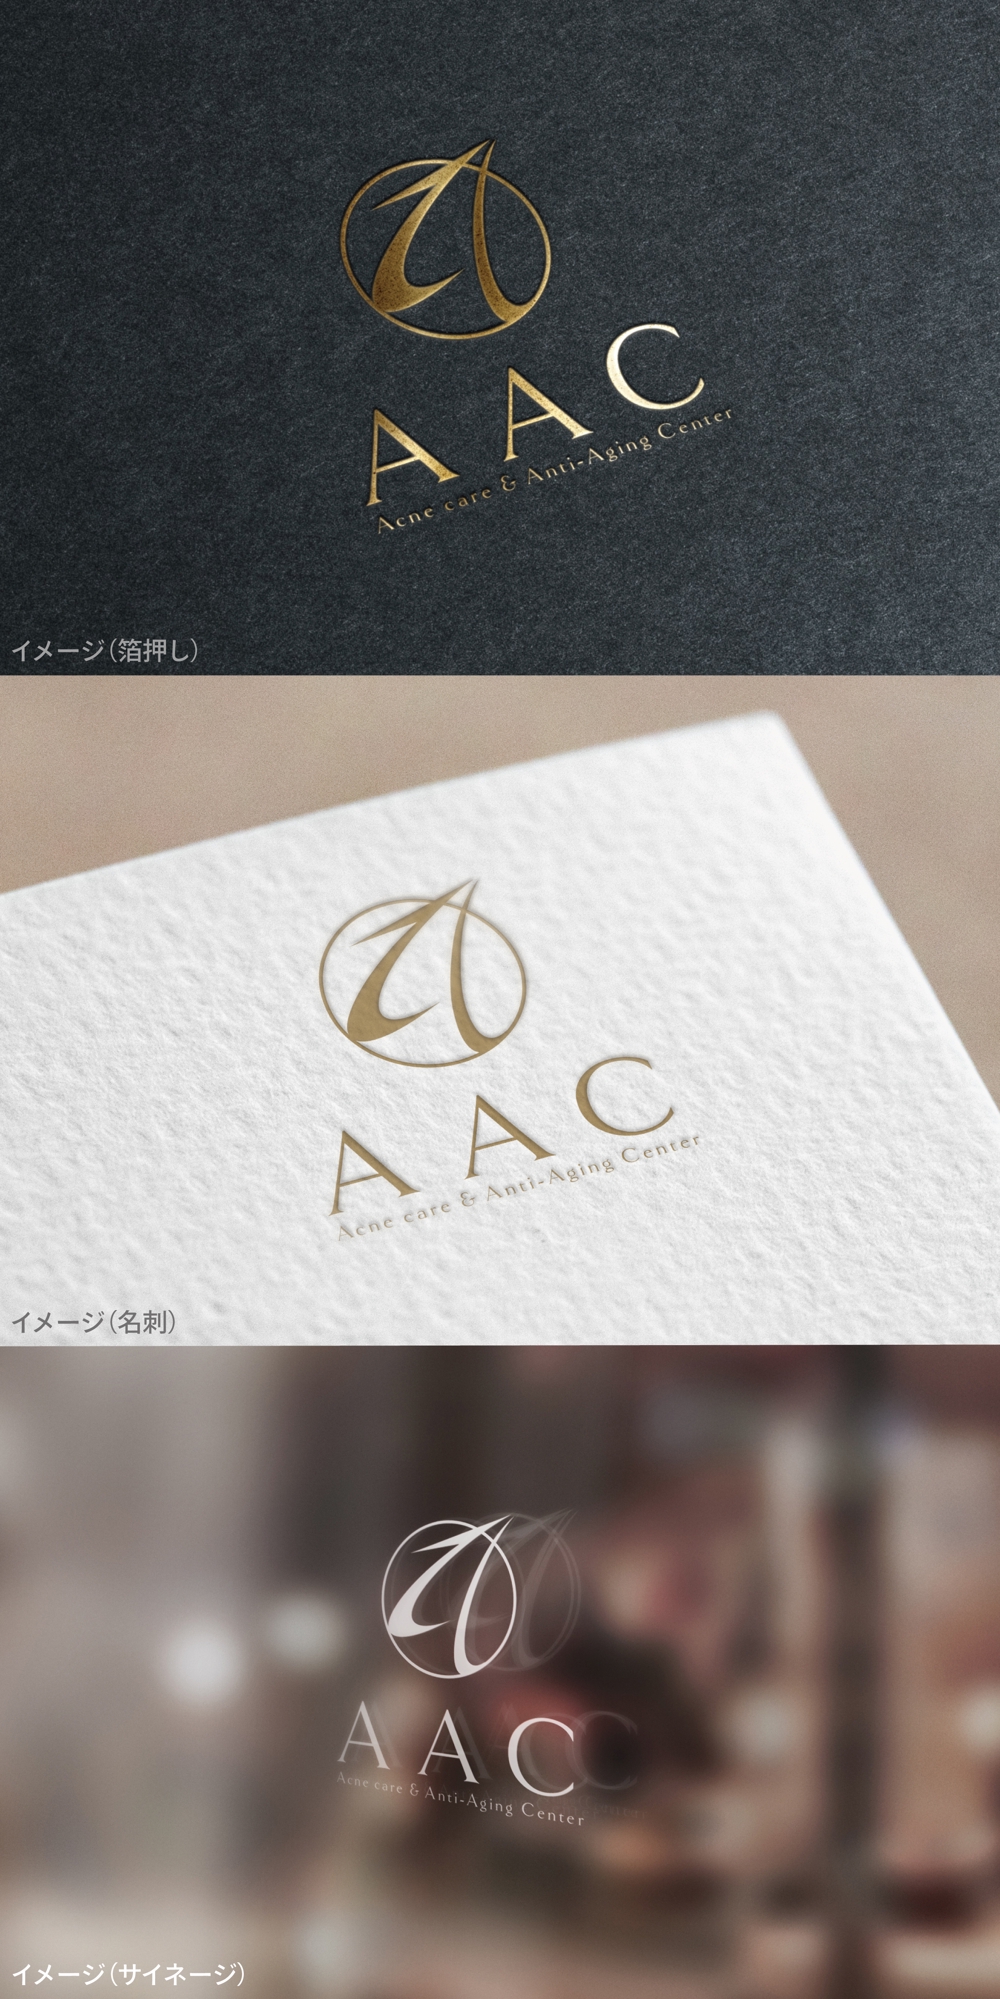 AAC_logo01_01.jpg